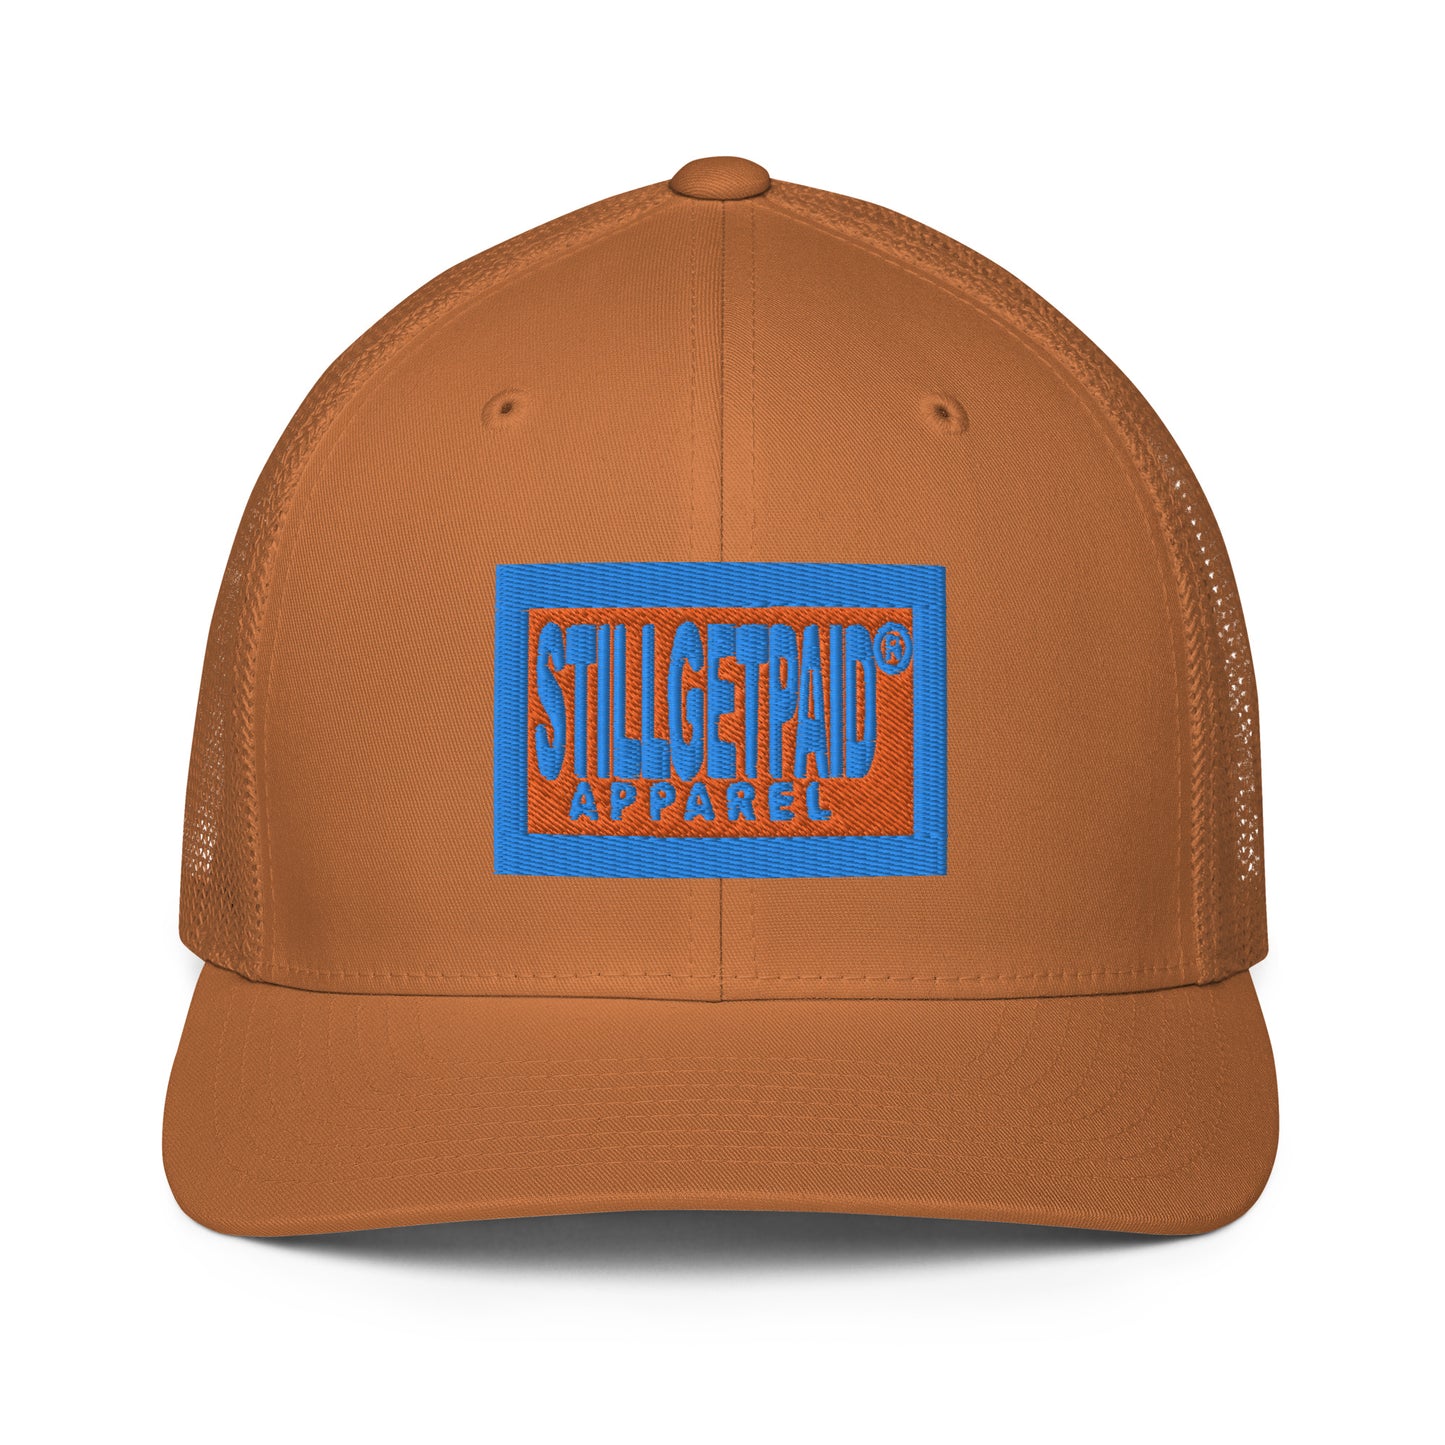 STILLGETPAID® APPAREL Closed-back trucker cap